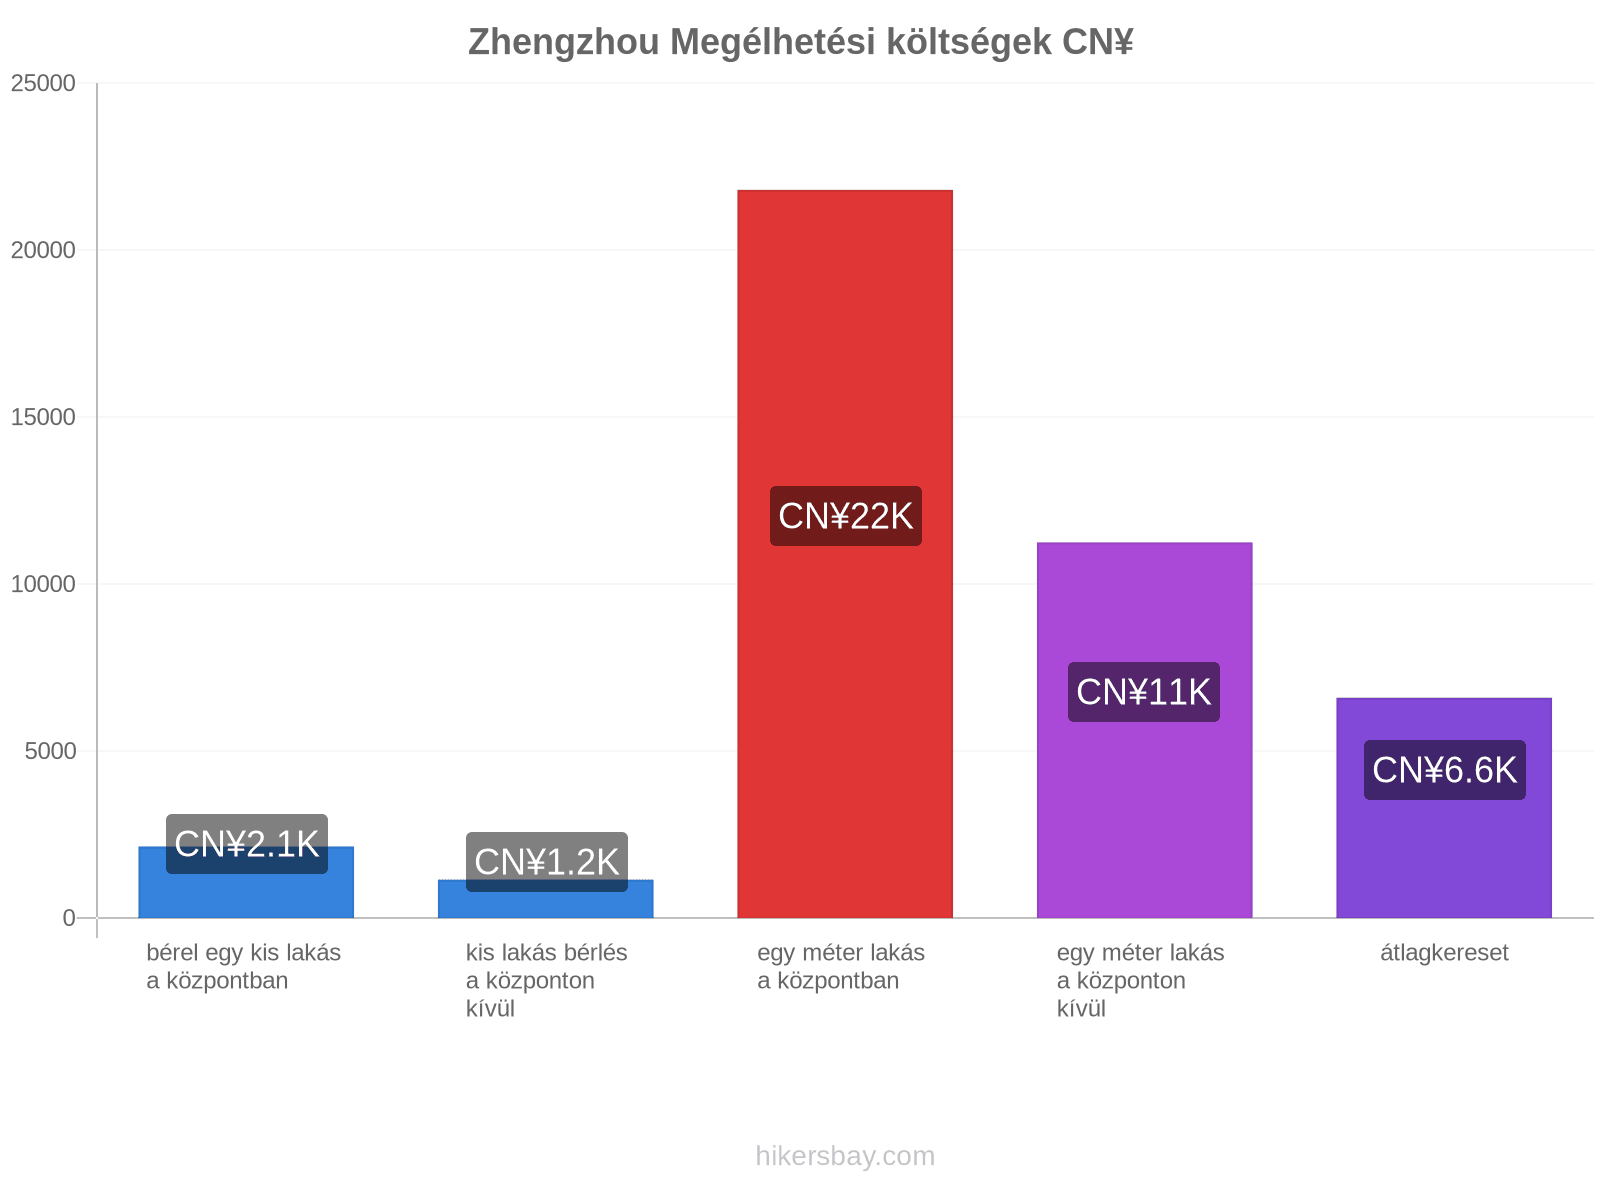 Zhengzhou megélhetési költségek hikersbay.com